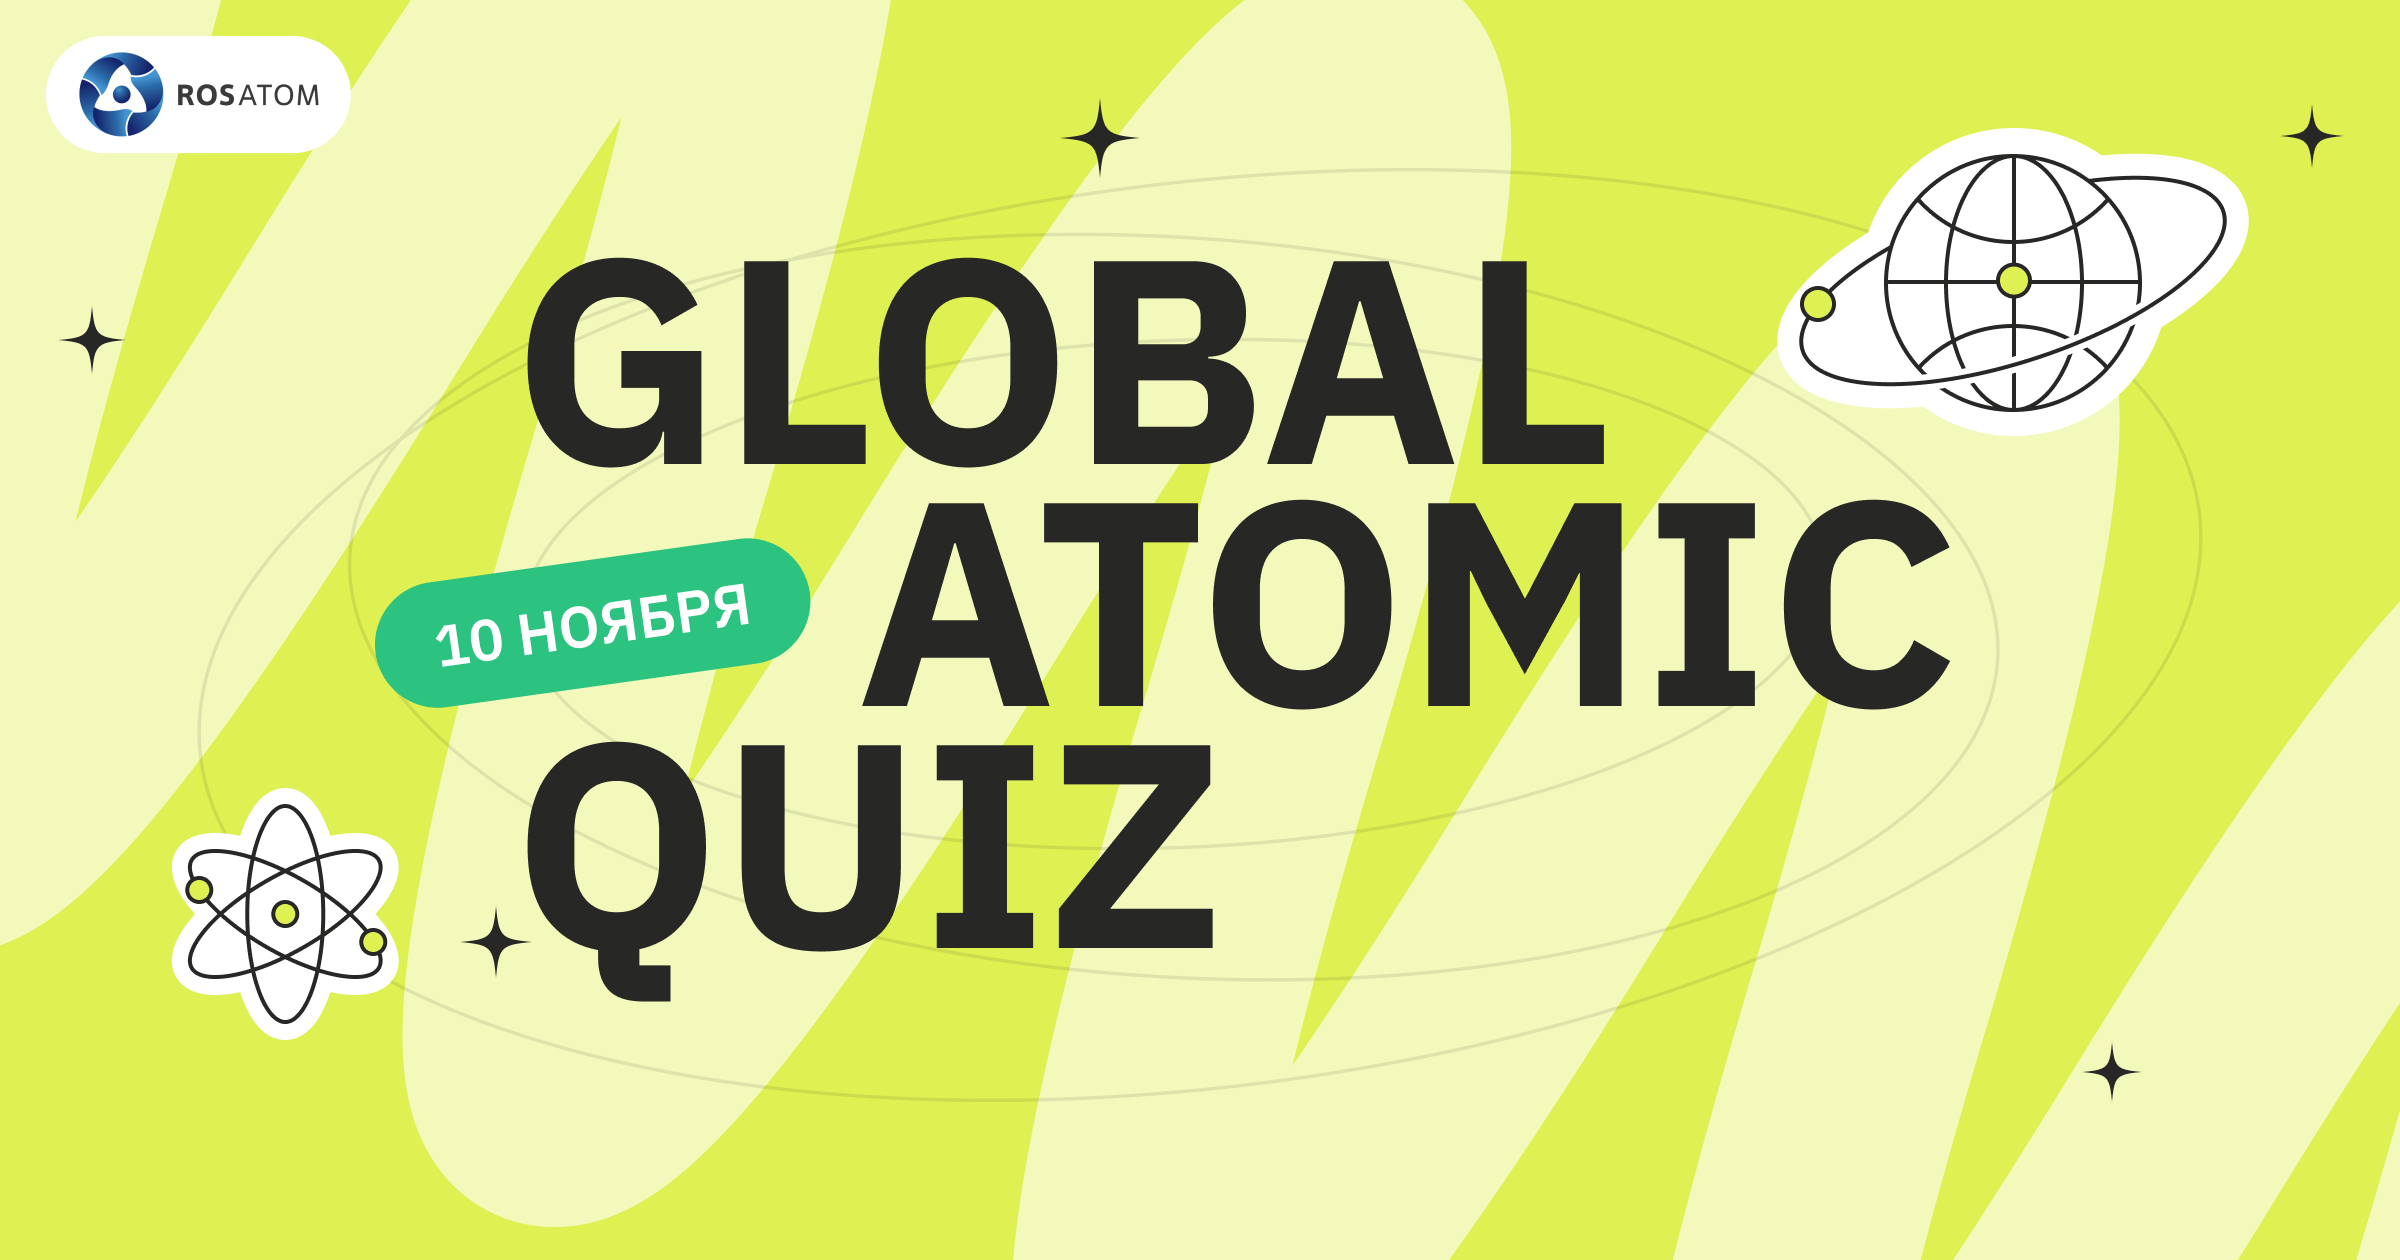 Ռոսատոմը կանցկացնի առցանց վիկտորինա՝ Global Atomic Quiz